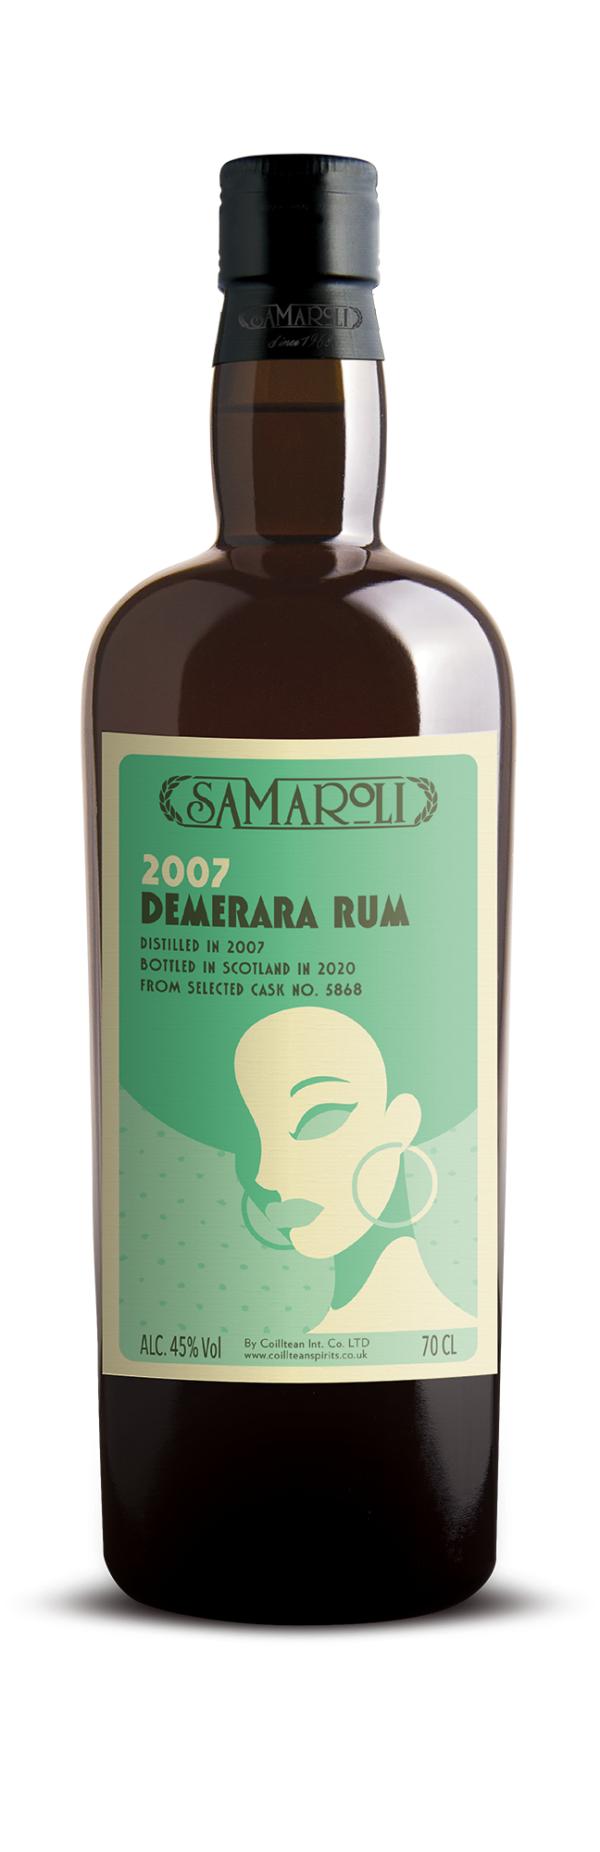 Samaroli DEMERARA 2007 Rum – ed. 2020